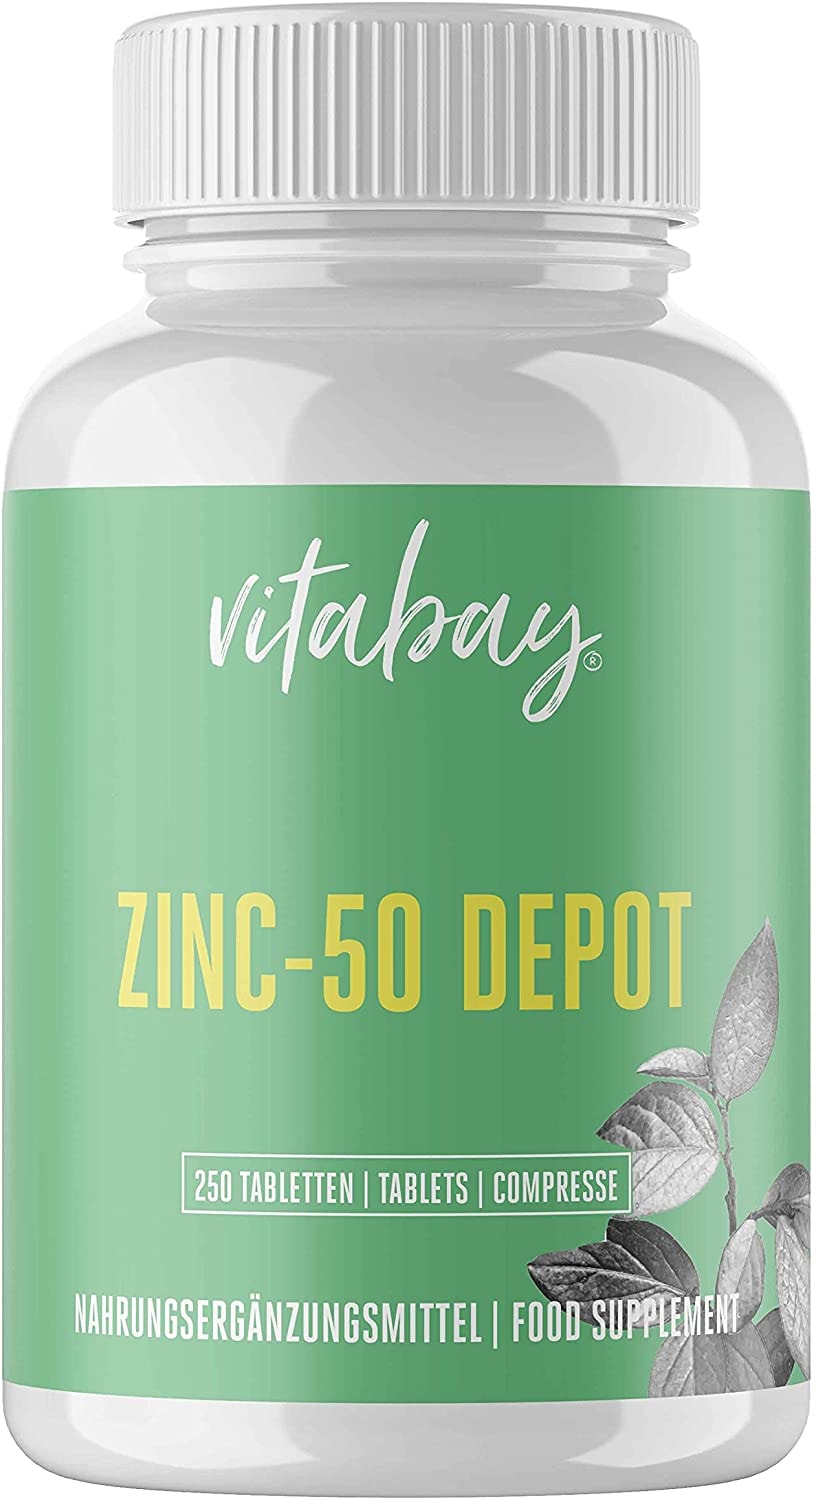 Vitabay Zink 50 mg • 250 Tabletten/500 Portionen • 25mg Zink (Elementargehalt) pro 1/2 Tablette • Aus reinem Zink Gluconat • Hohe Bioverfügbarkeit • Made in Germany